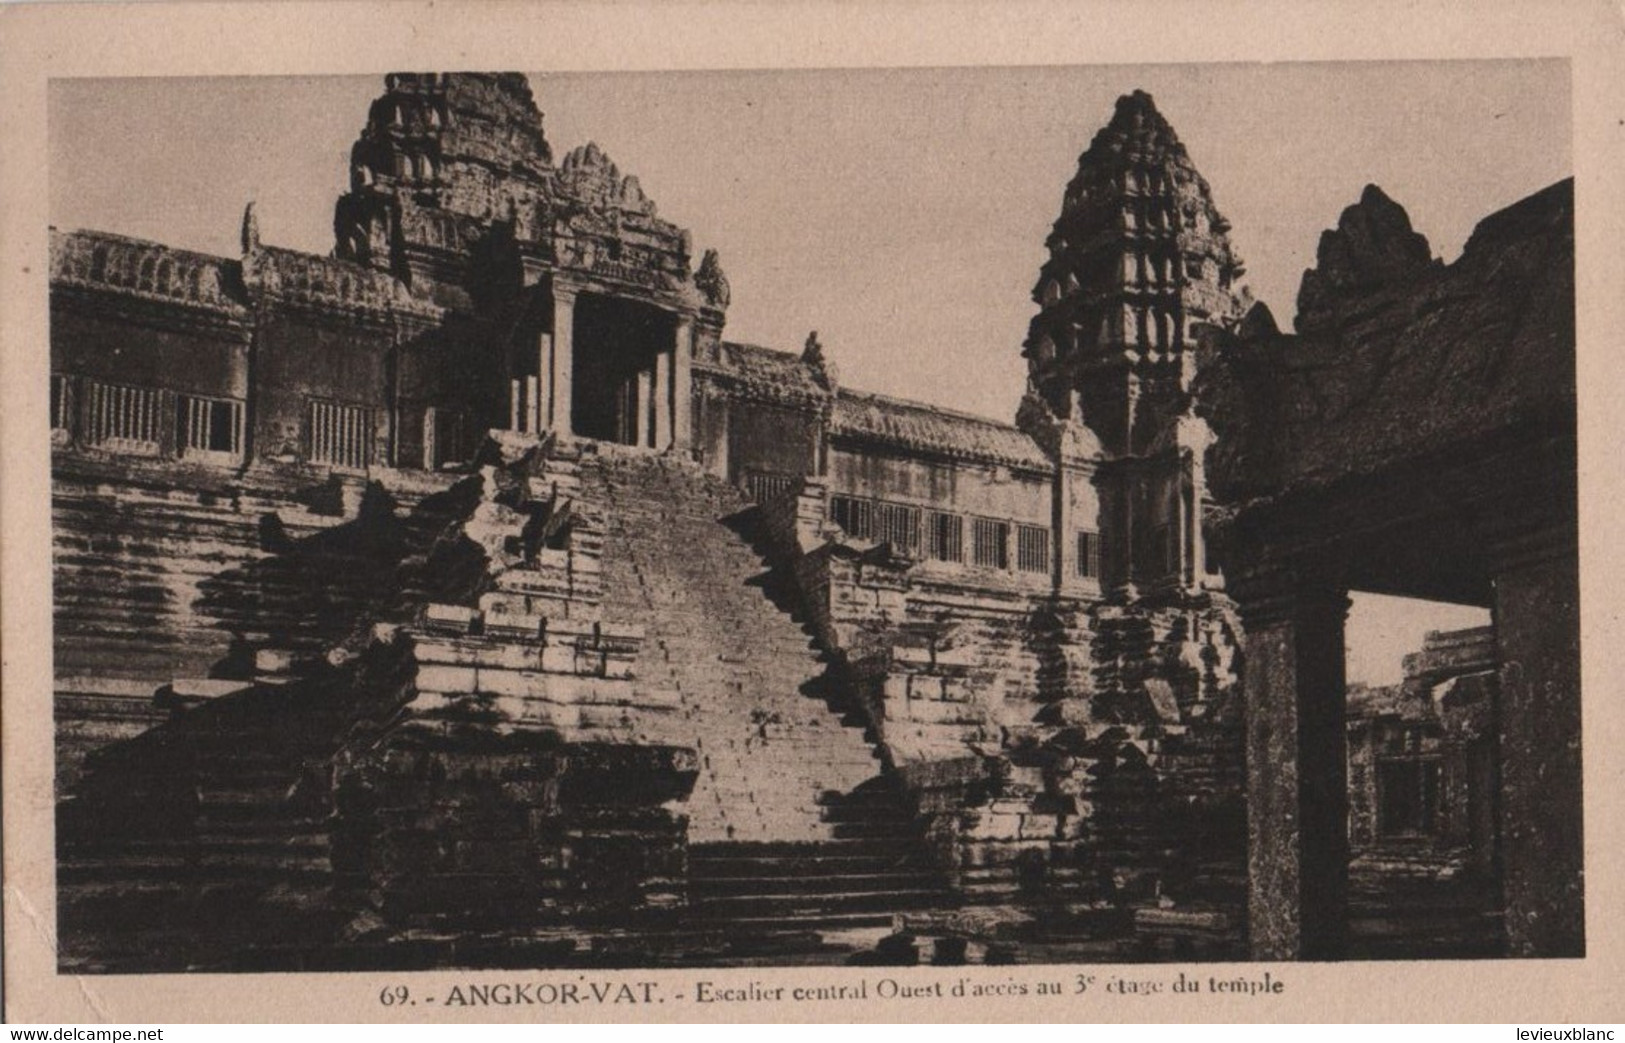 CAMBODGE /ANGKOR VAT/Esdcalier Central Ouest D'accés Au 3éme étage Du Temple /Vers 1910-1920     CPDIV358 - Cambodia